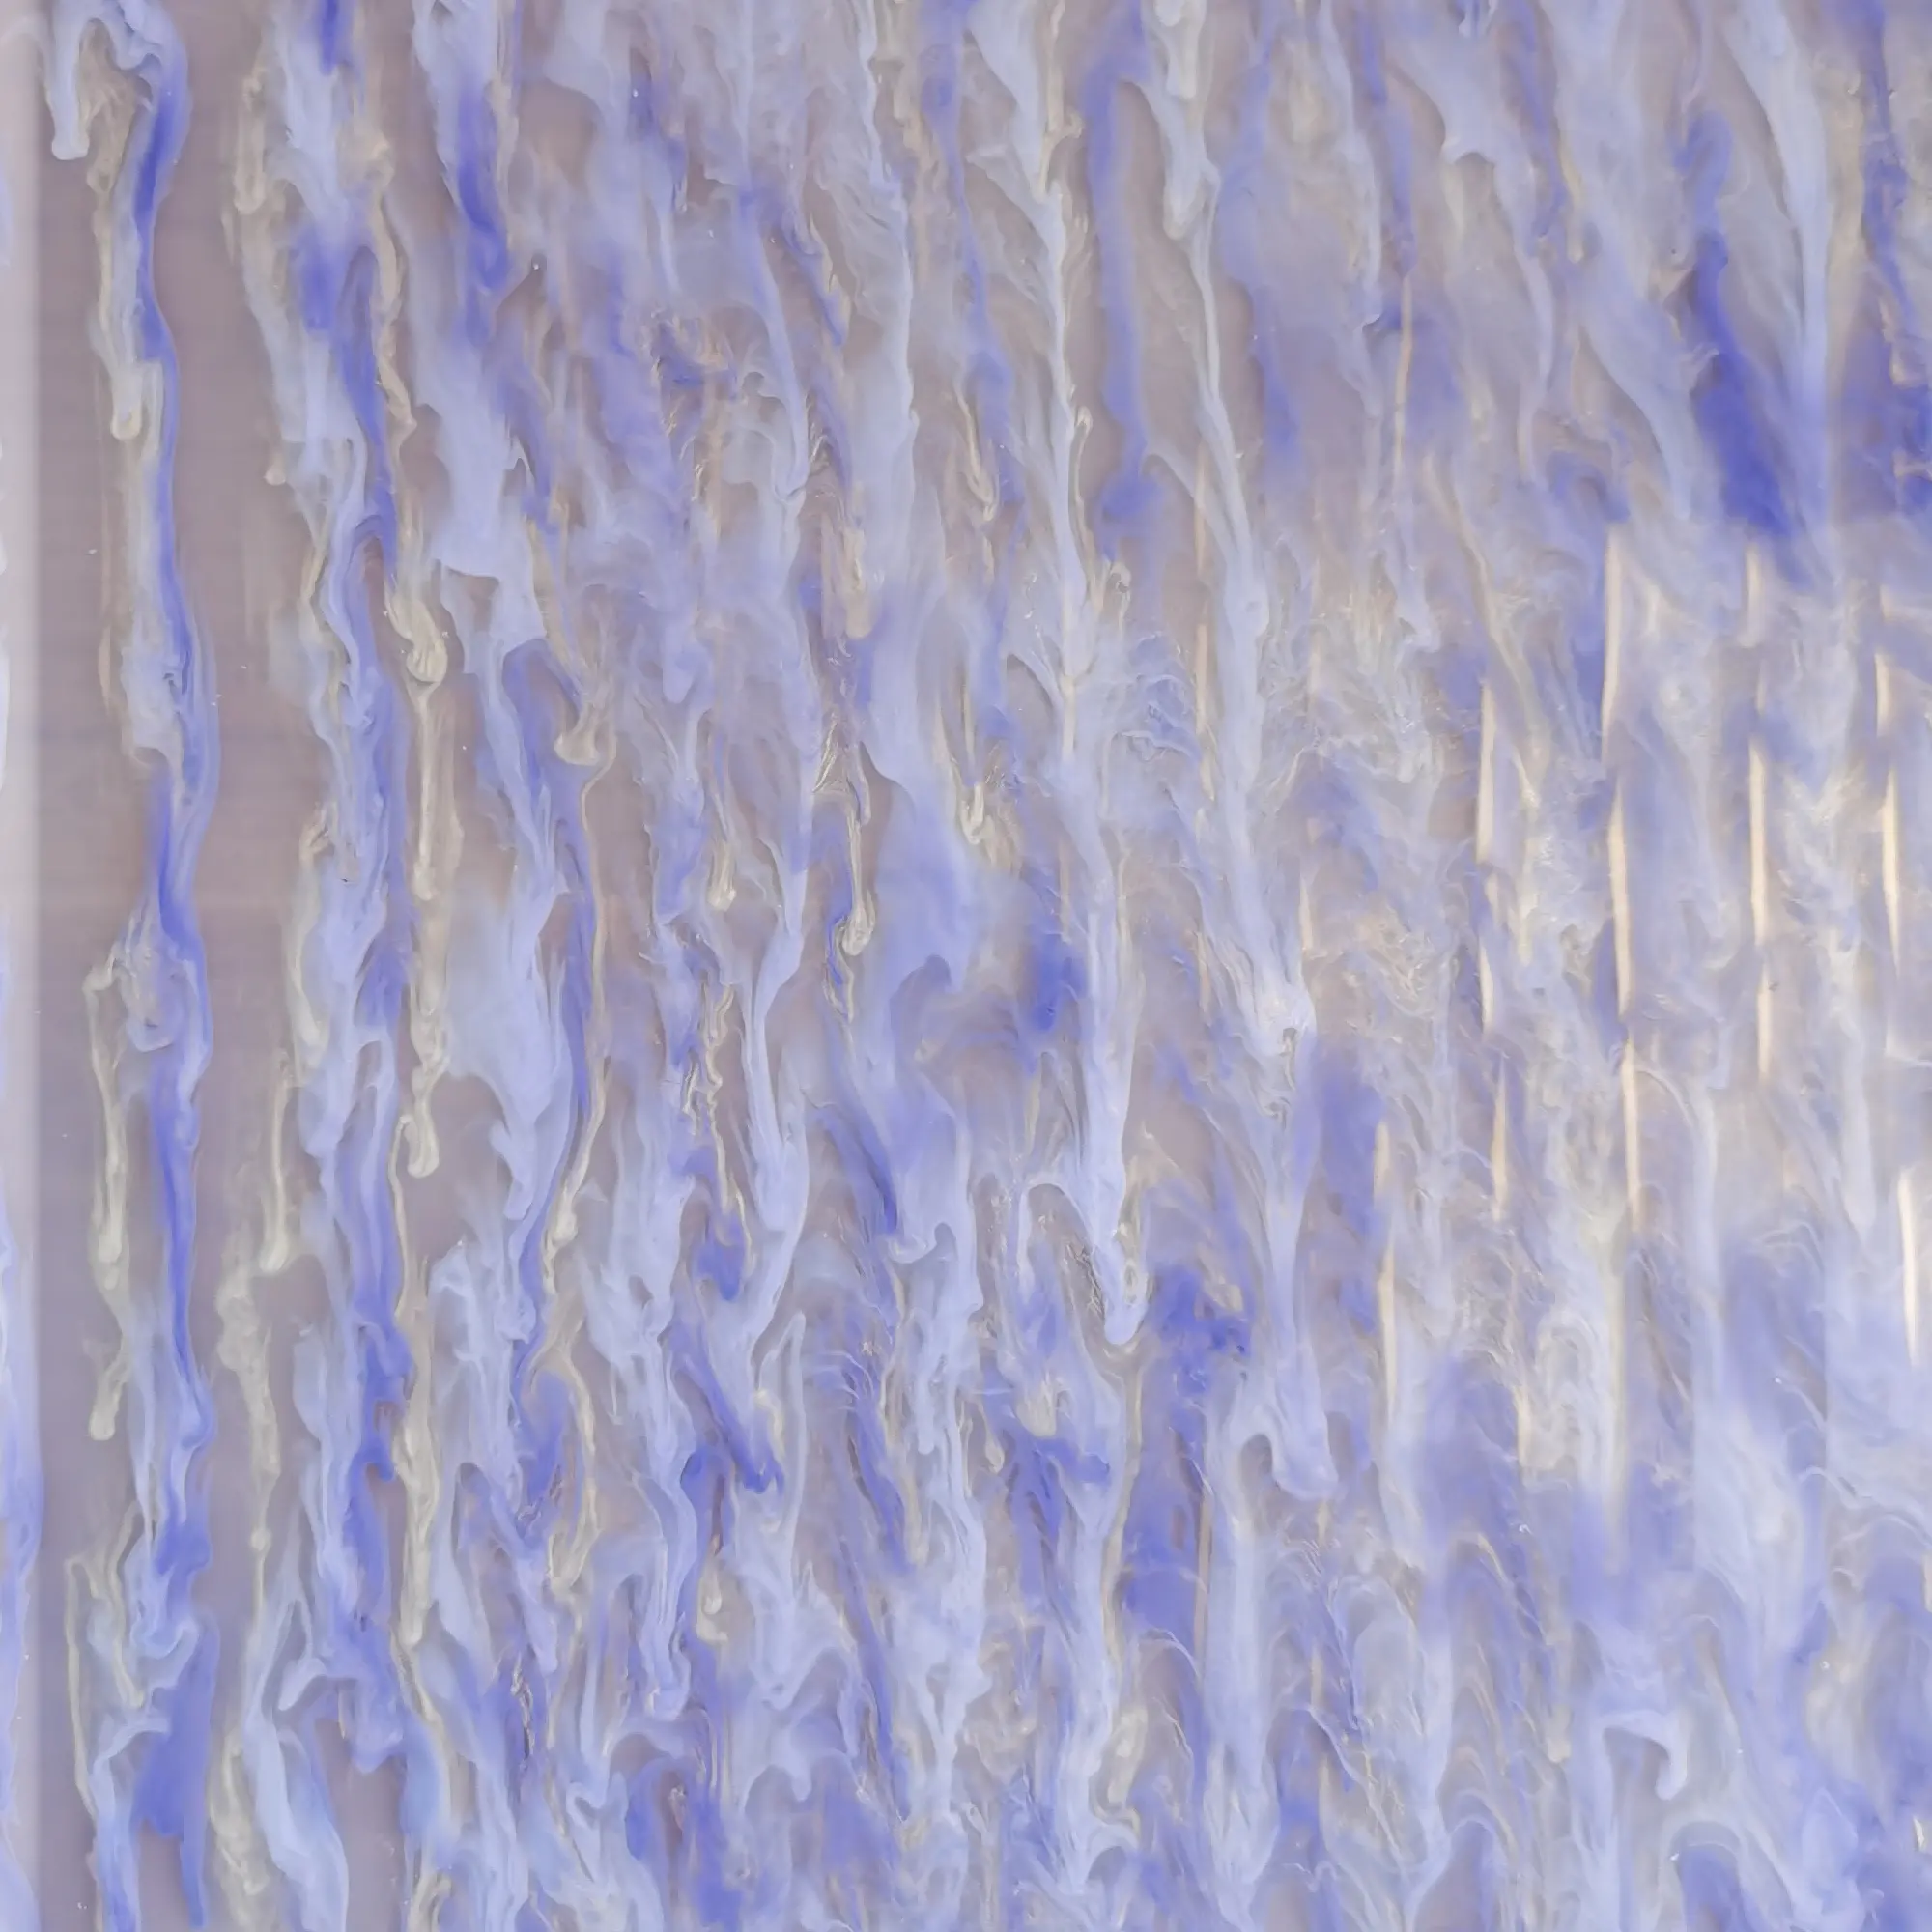 Литой акриловый лист толщиной 3 мм с мраморным эффектом, 1/8 дюйма, акриловый лист с рисунком бледно-фиолетовых облаков